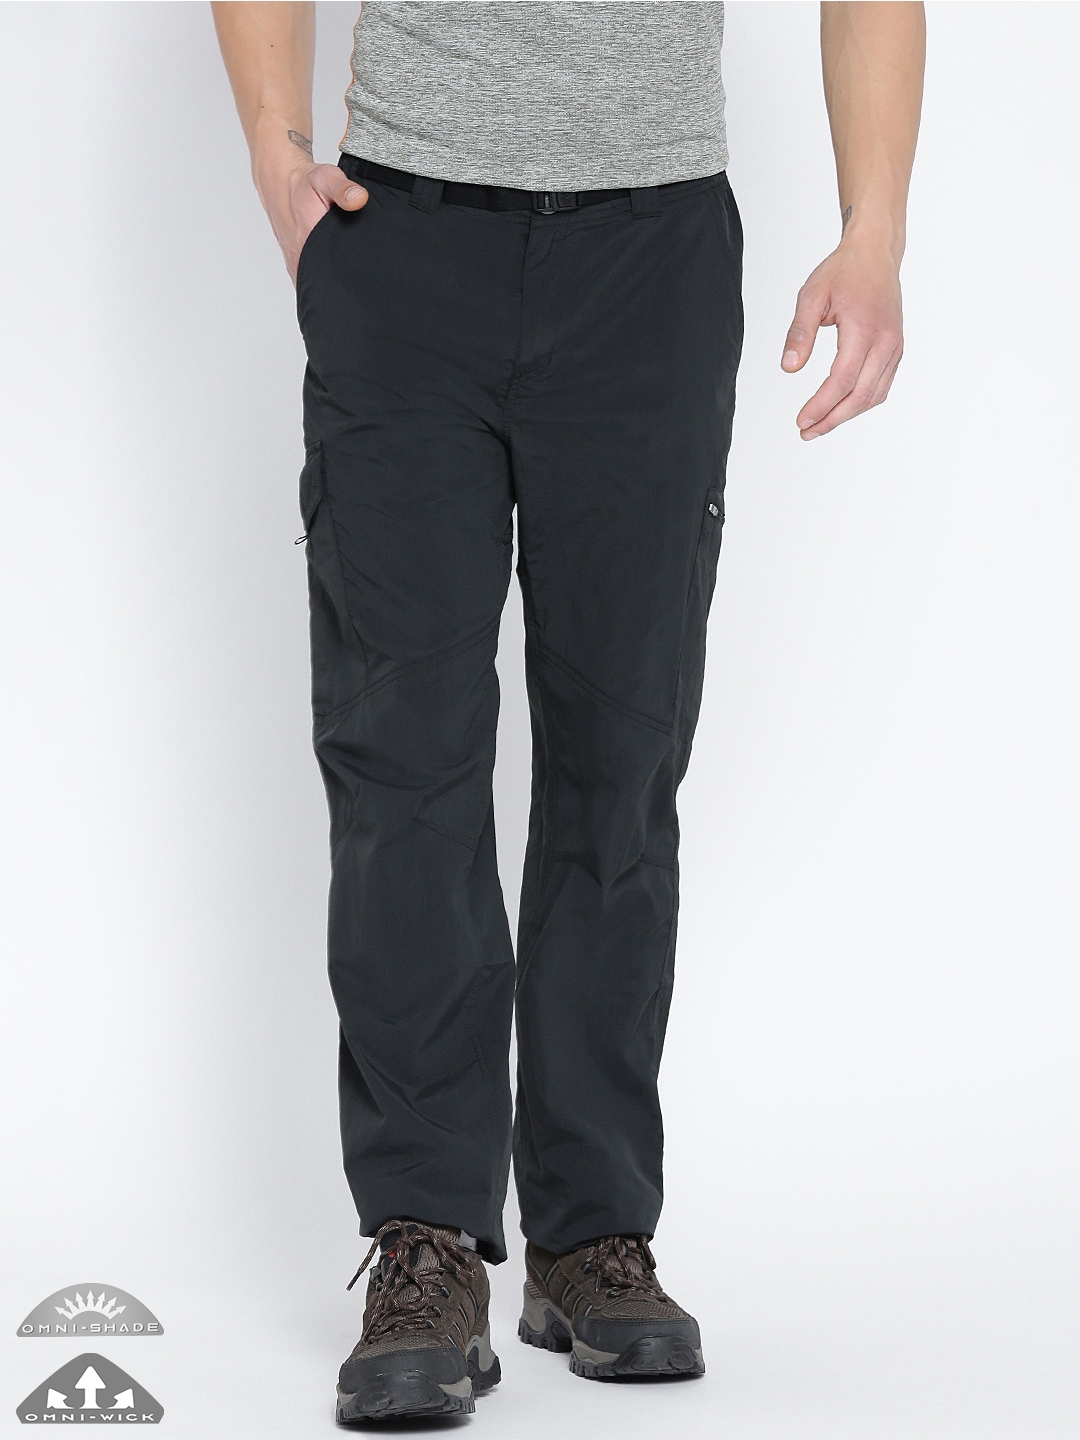 Buy Columbia Regular Fit Men Grey Trousers Online at Best Prices in India   Flipkartcom